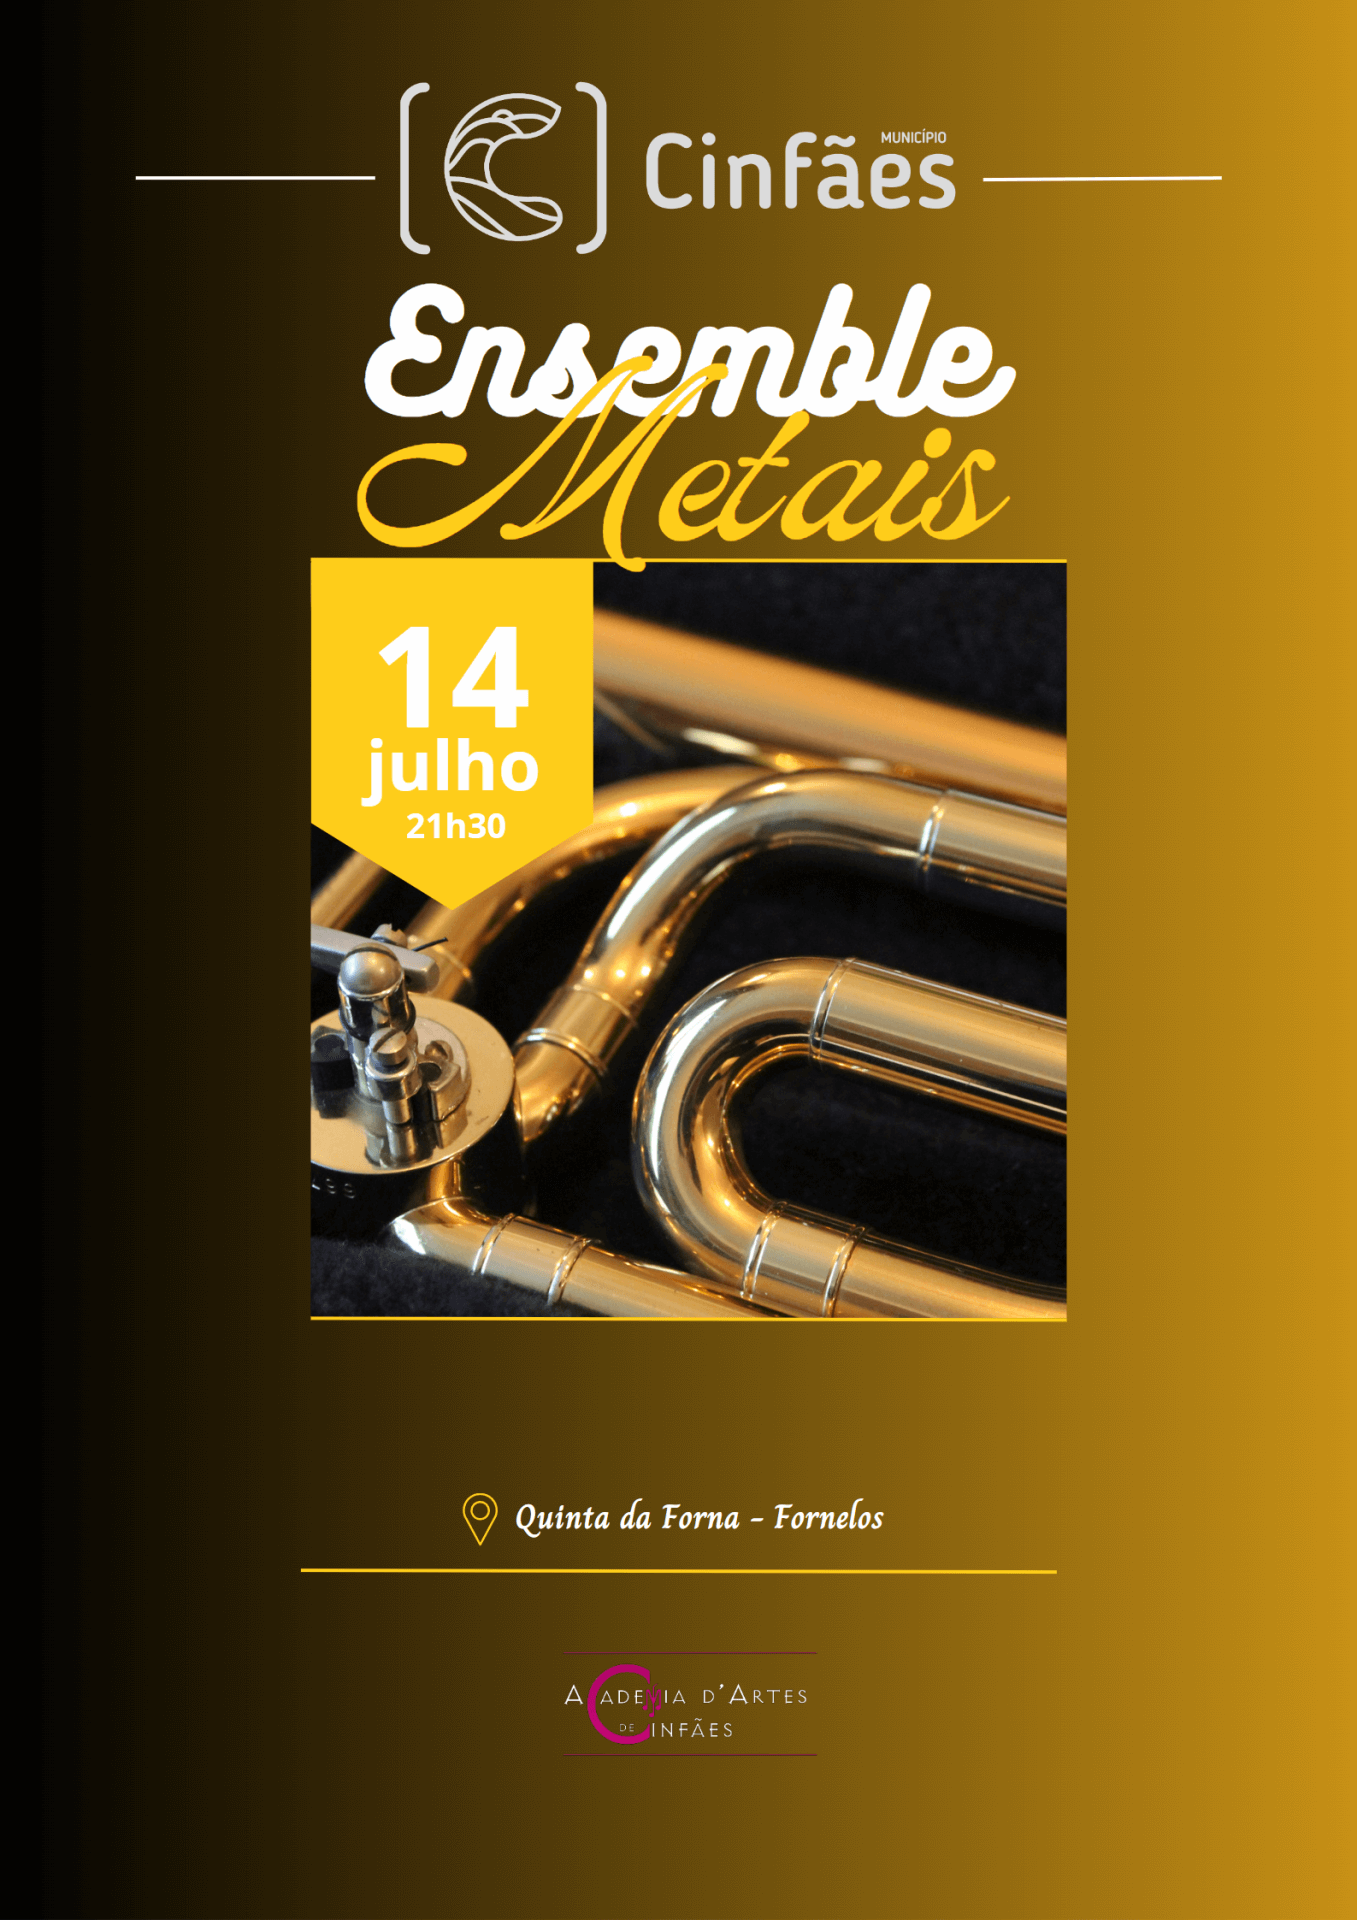 Ensemble de Metais - Quinta da Forna em Fornelos